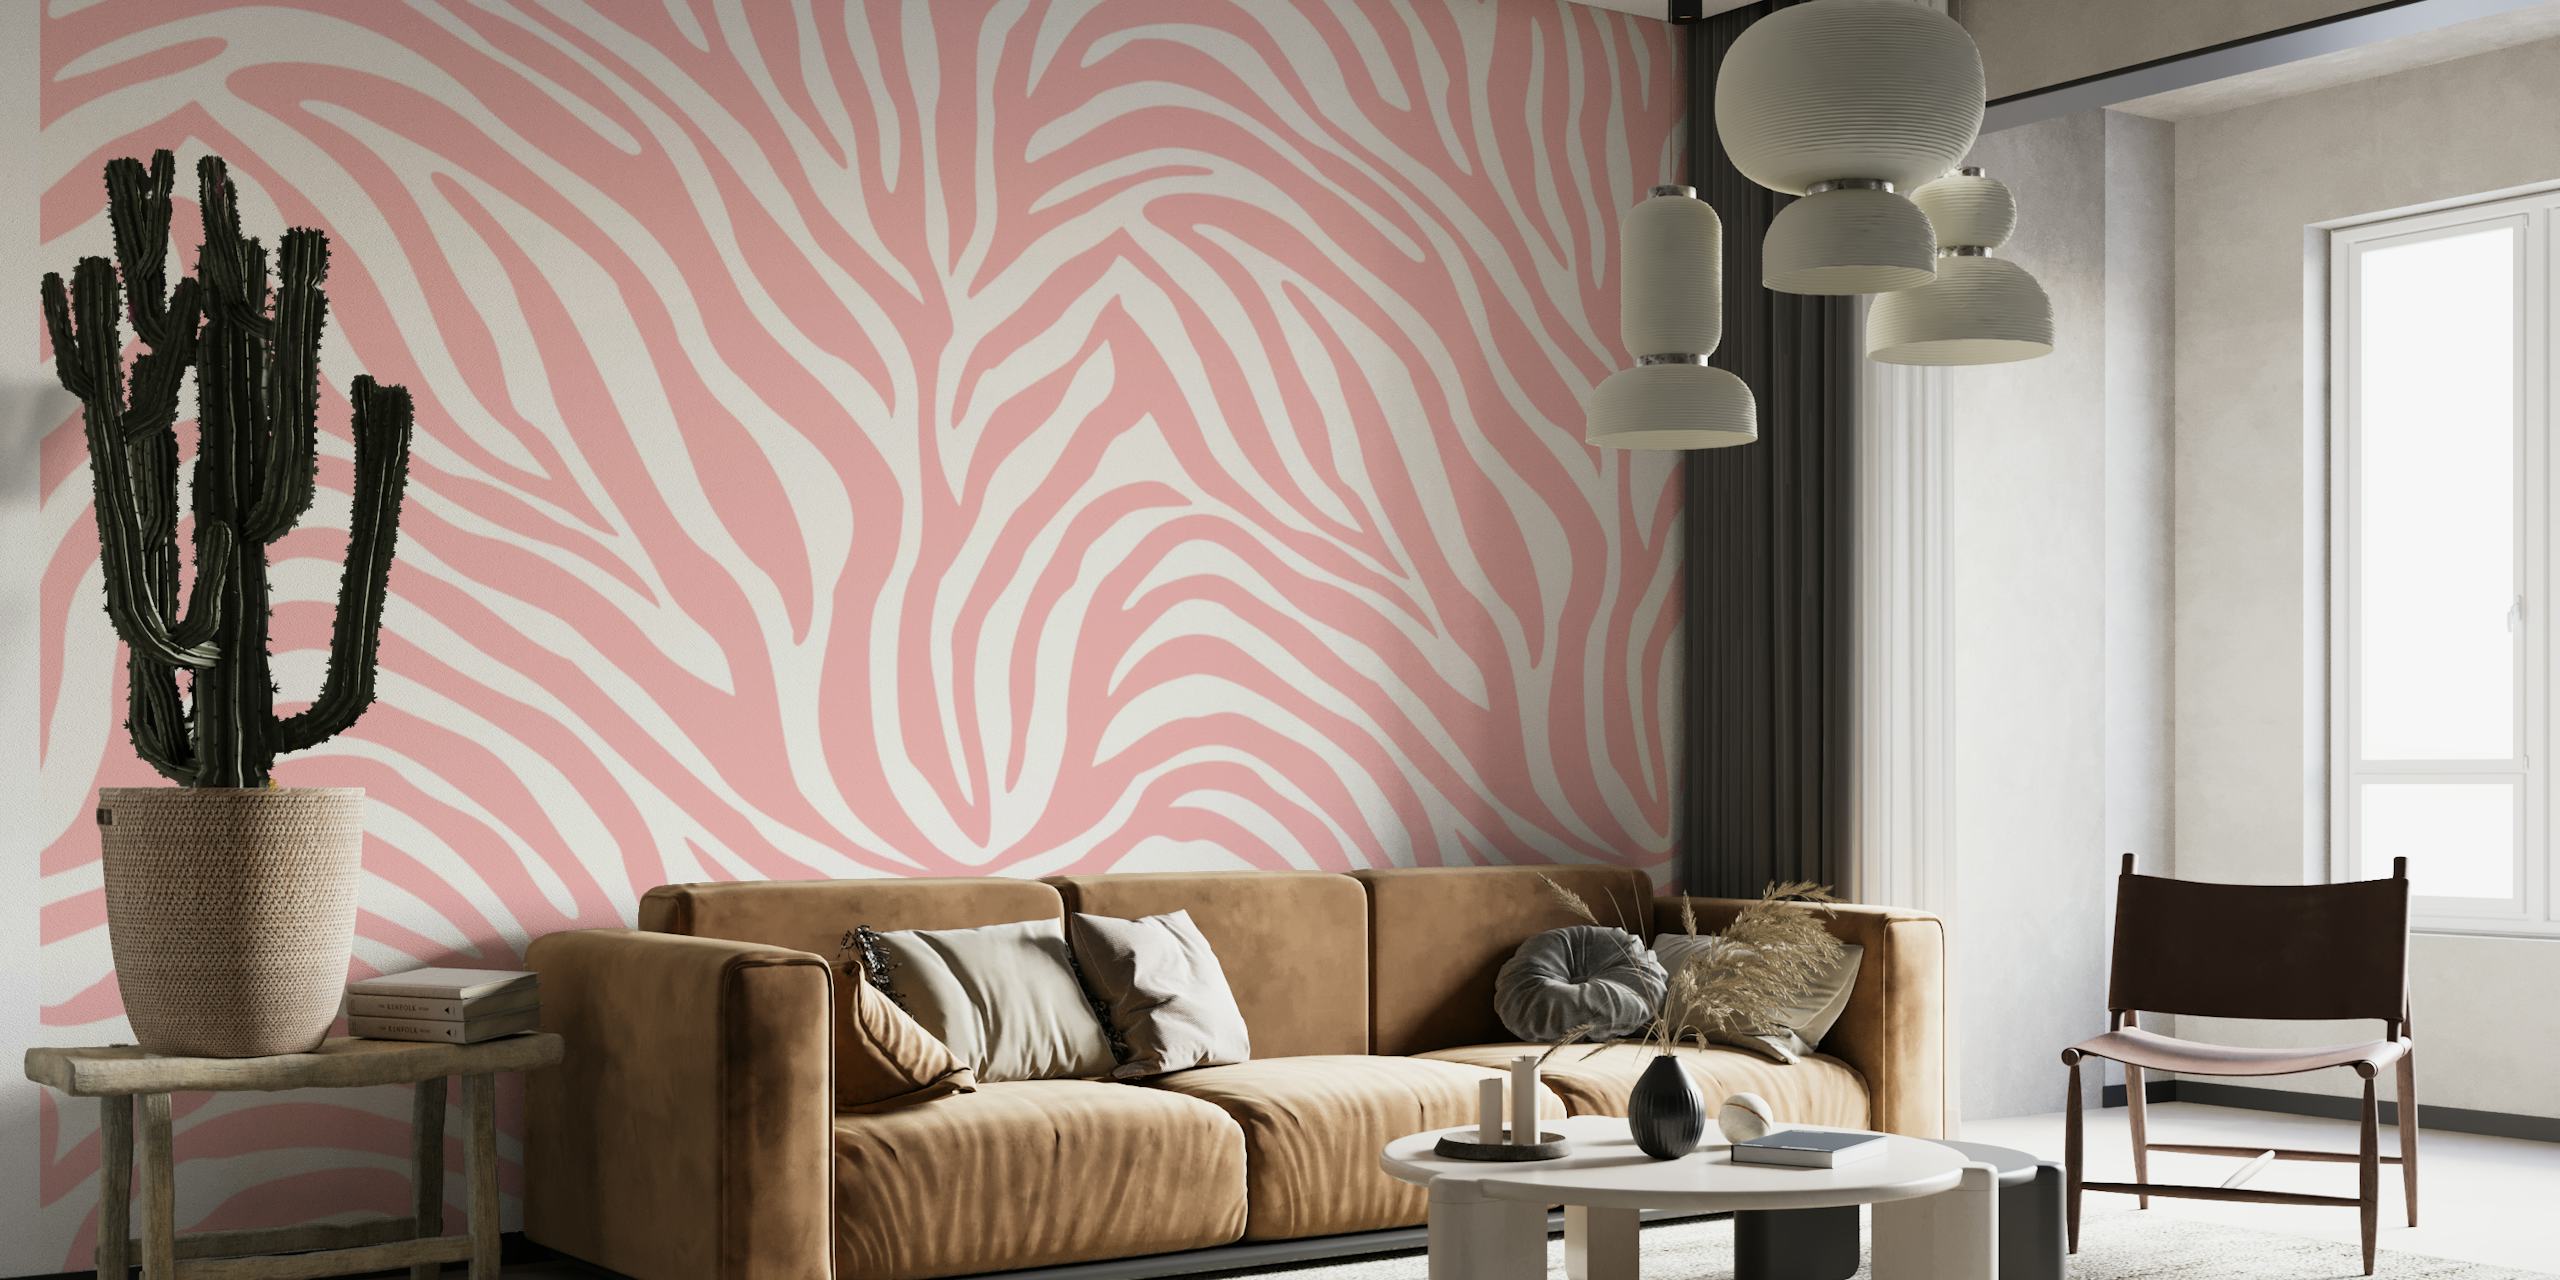 Pink zebra pattern papel pintado